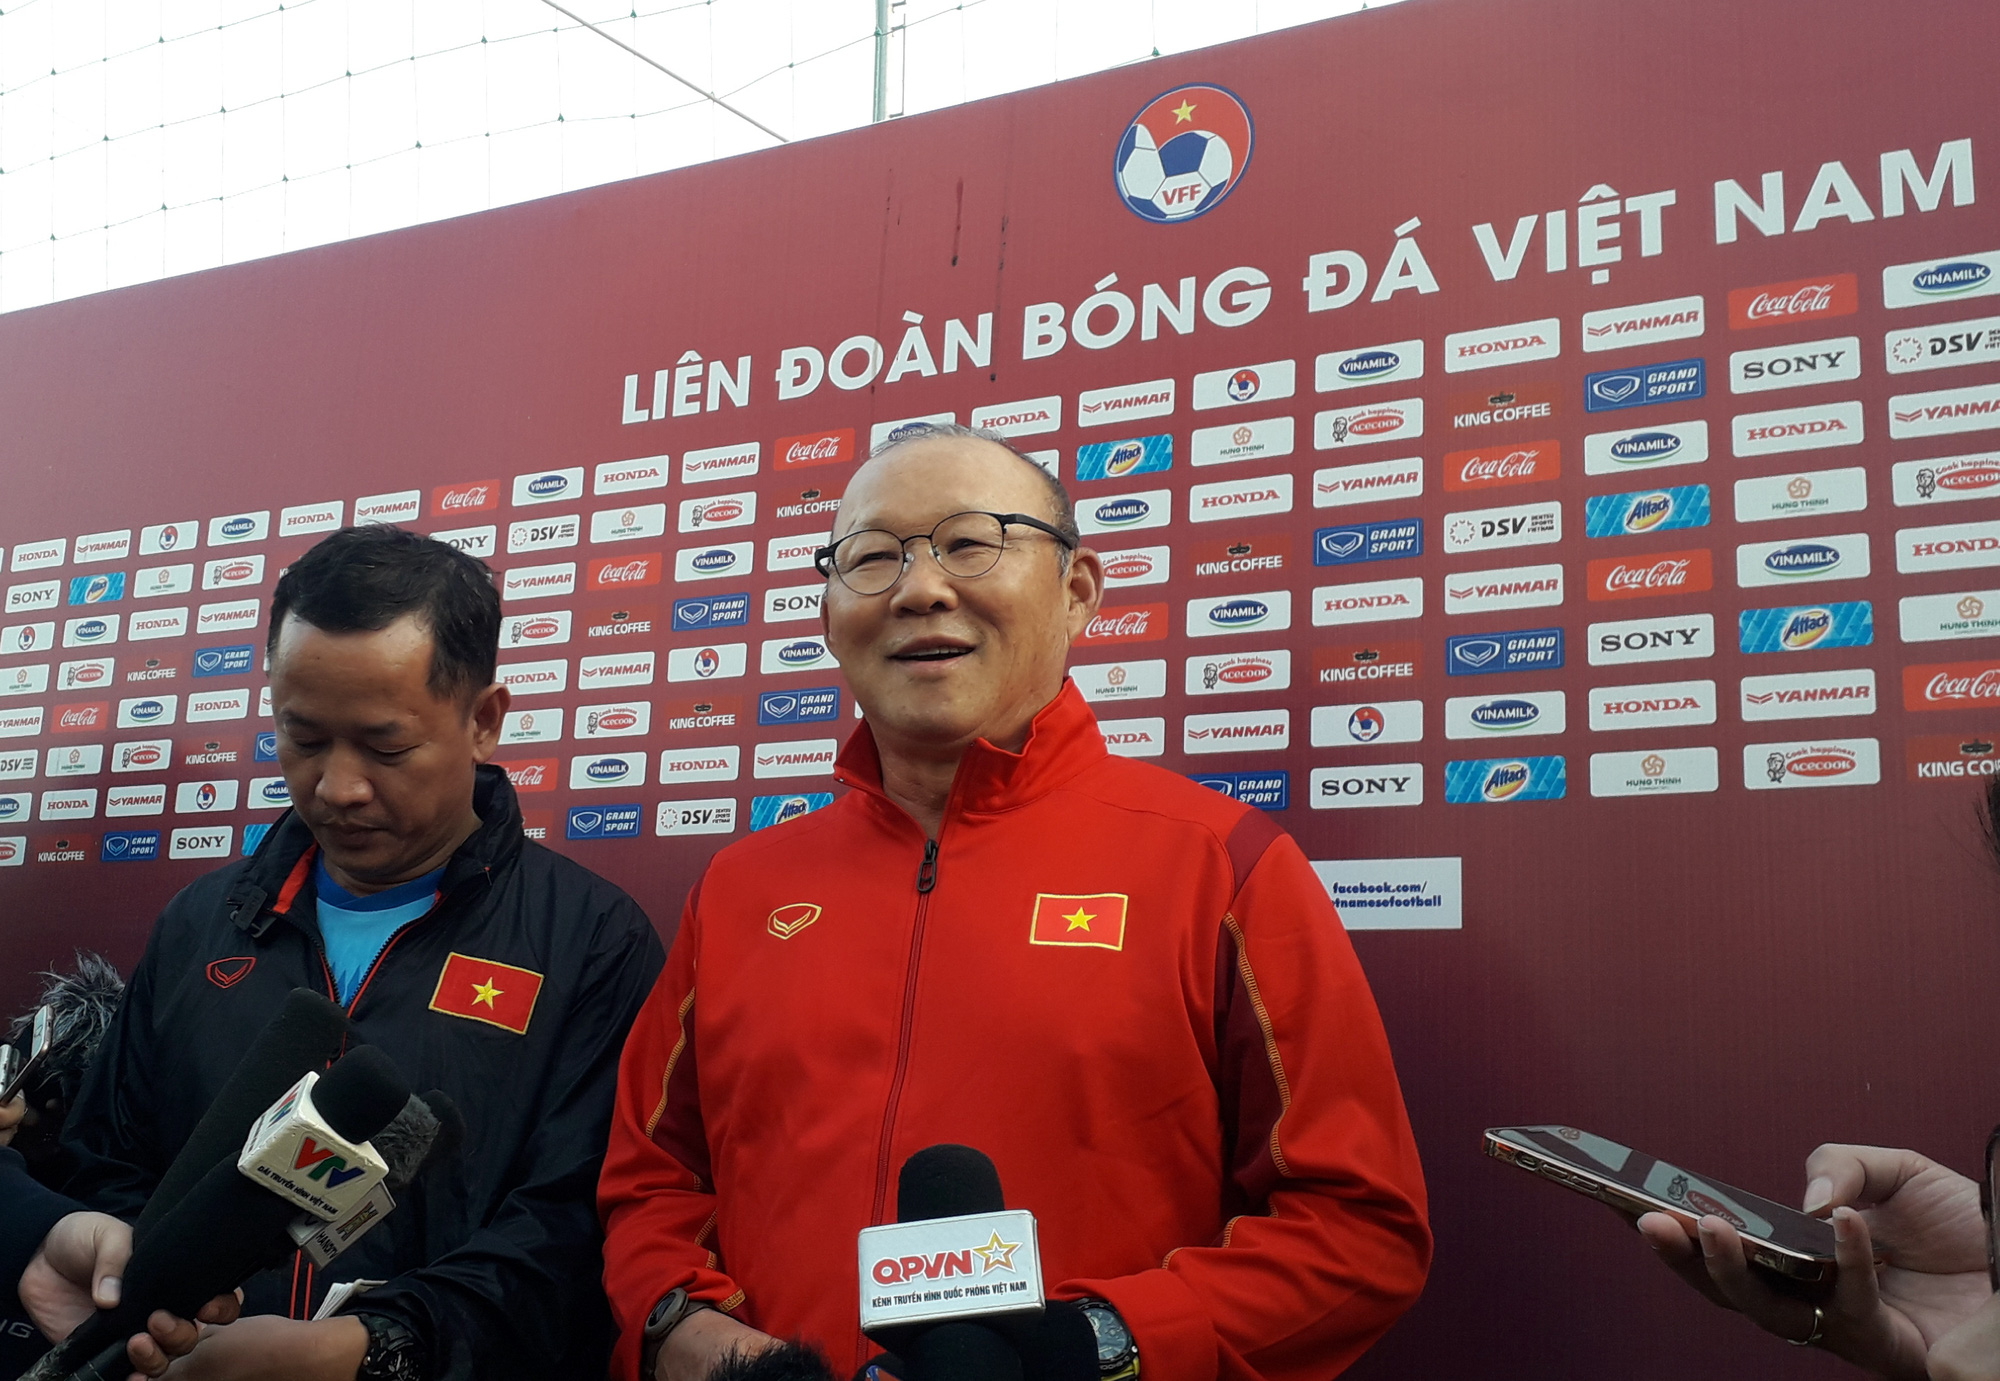 HLV Park Hang-seo khẳng định Văn Quyết là một cầu thủ giỏi và đây là lúc ĐT Việt Nam cần anh. Ảnh: Chính Minh